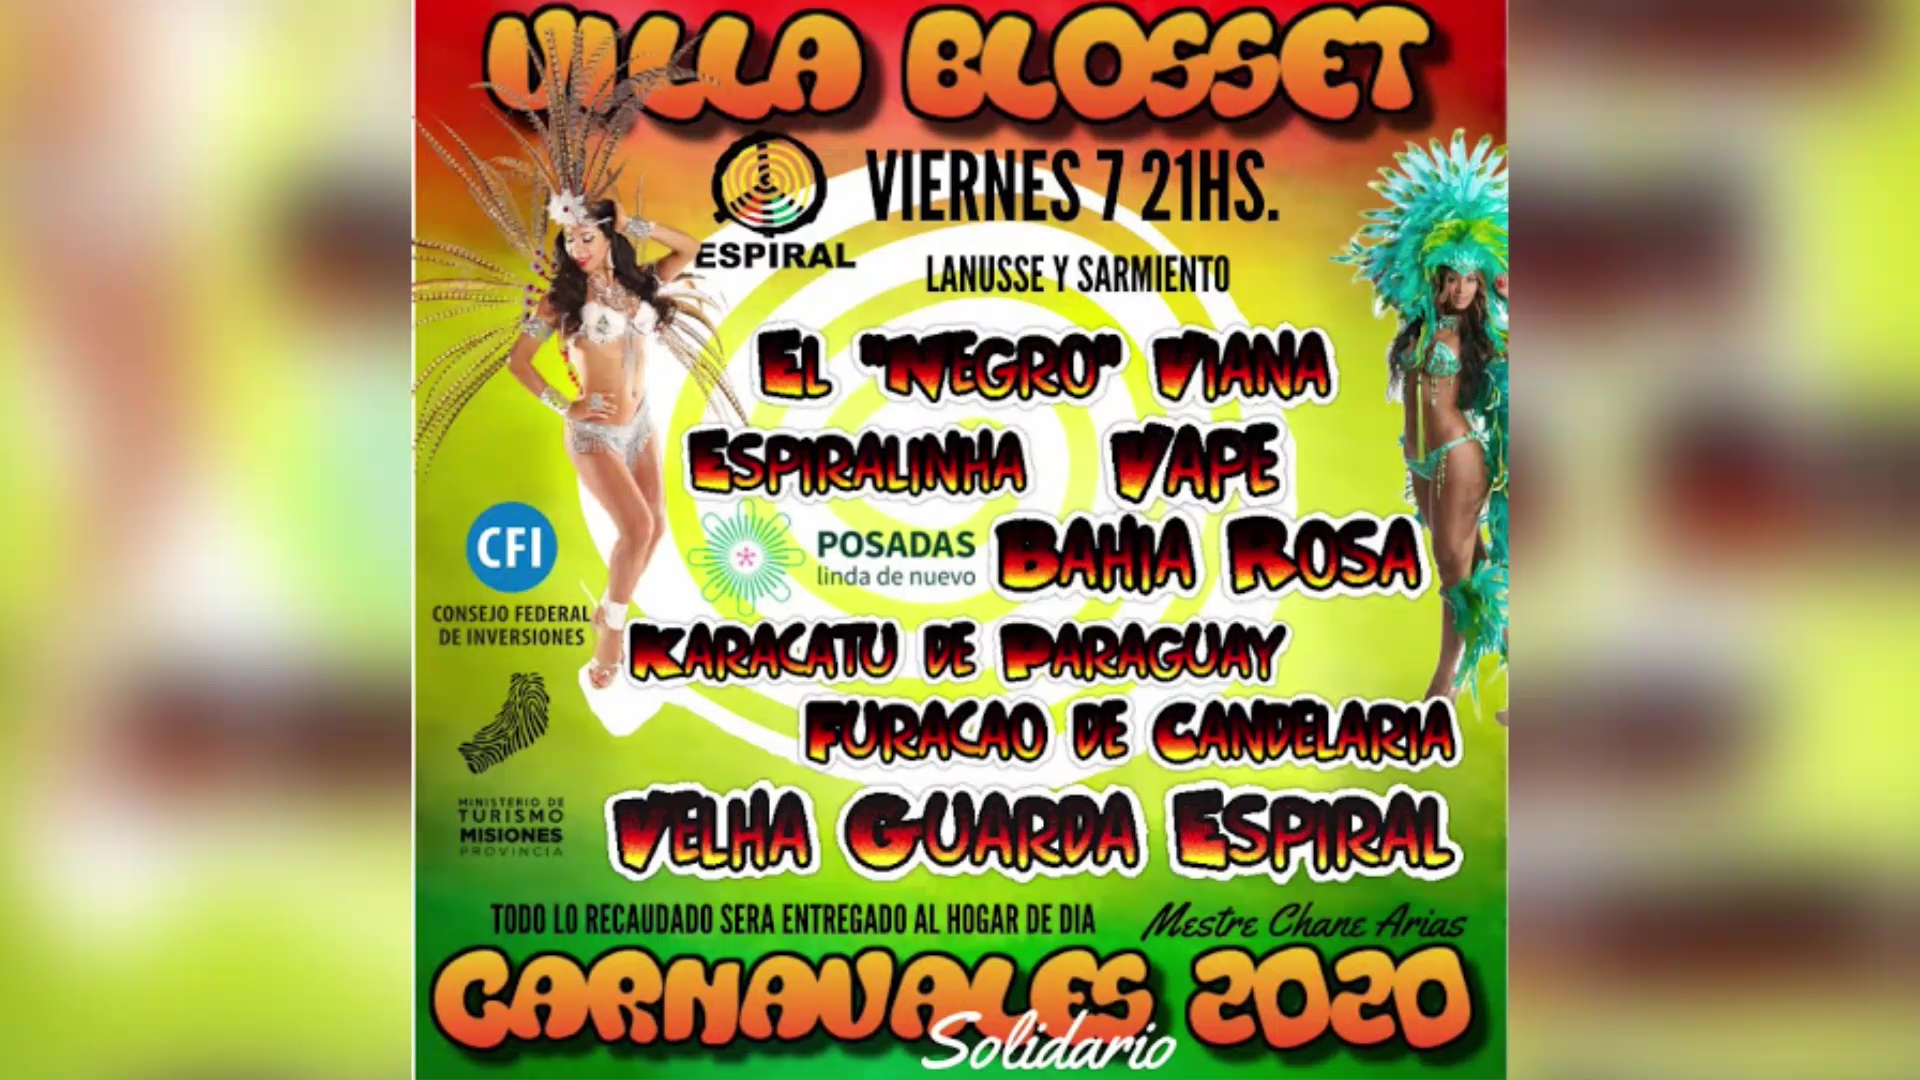 Esta noche desde las 21hs Villa Blosset festeja sus carnavales por 35 años consecutivos